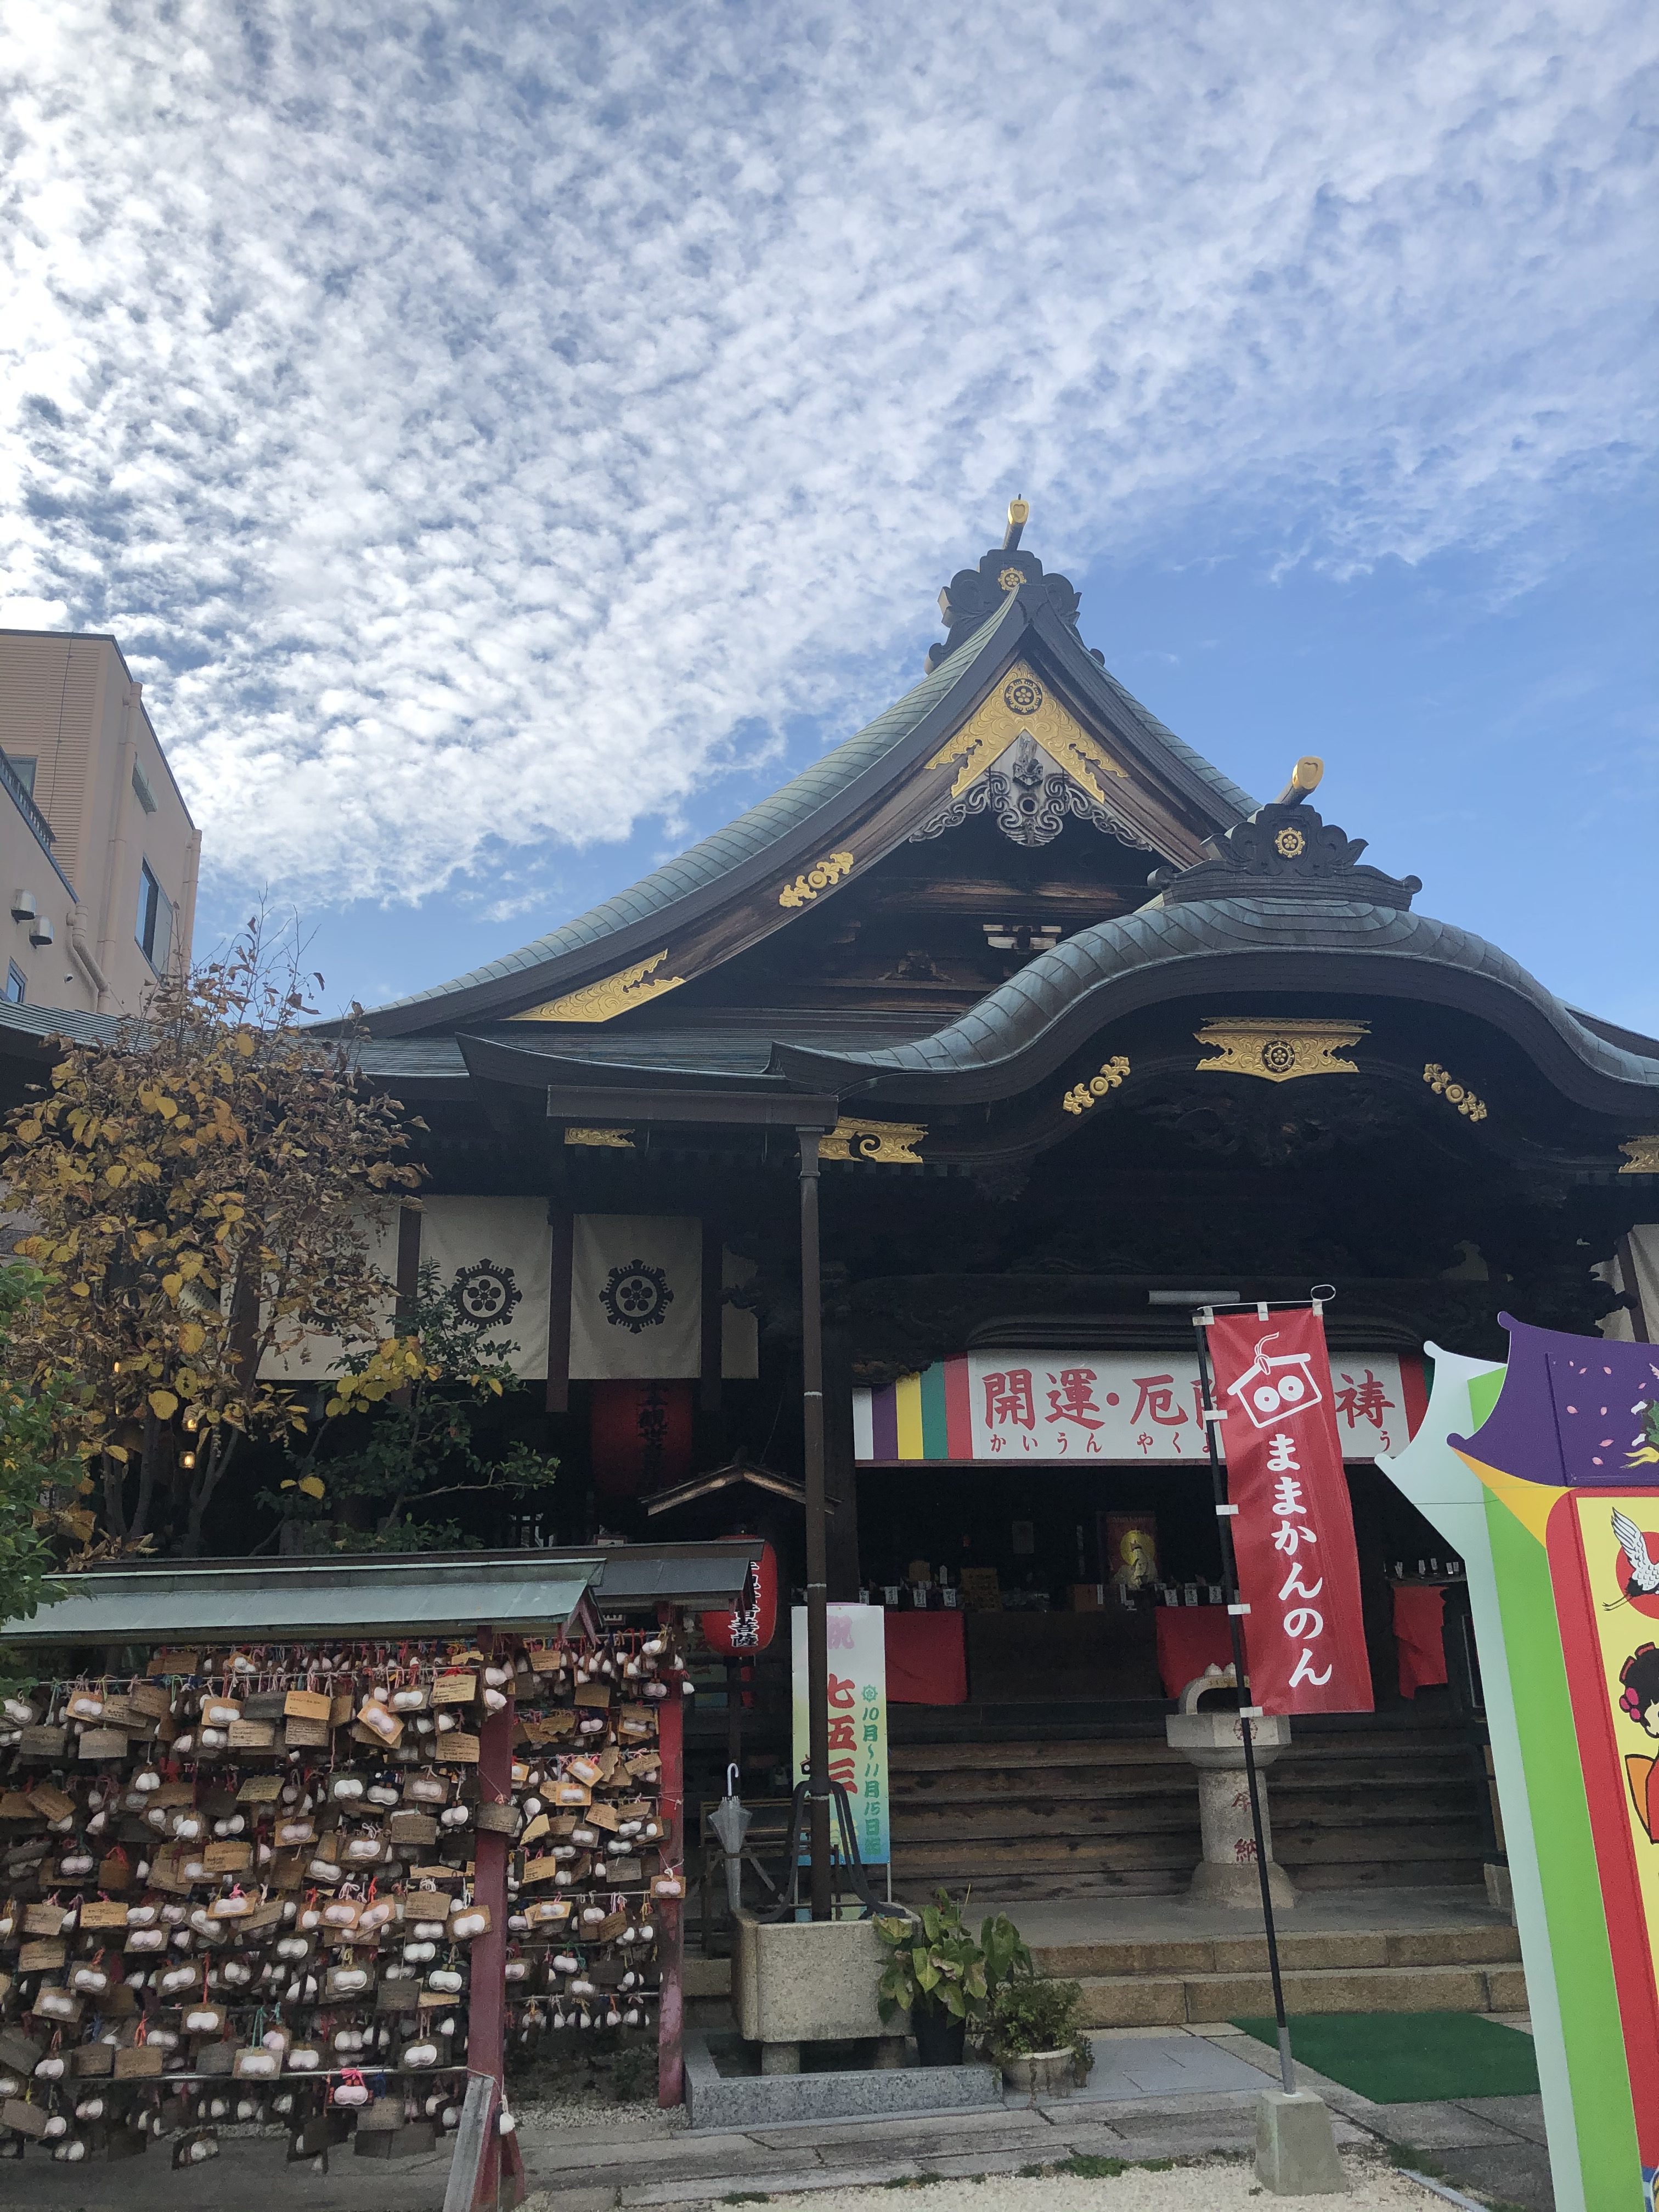 目のやり場に困る!? 日本で唯一の「お乳のお寺」が斬新なんです＾＾